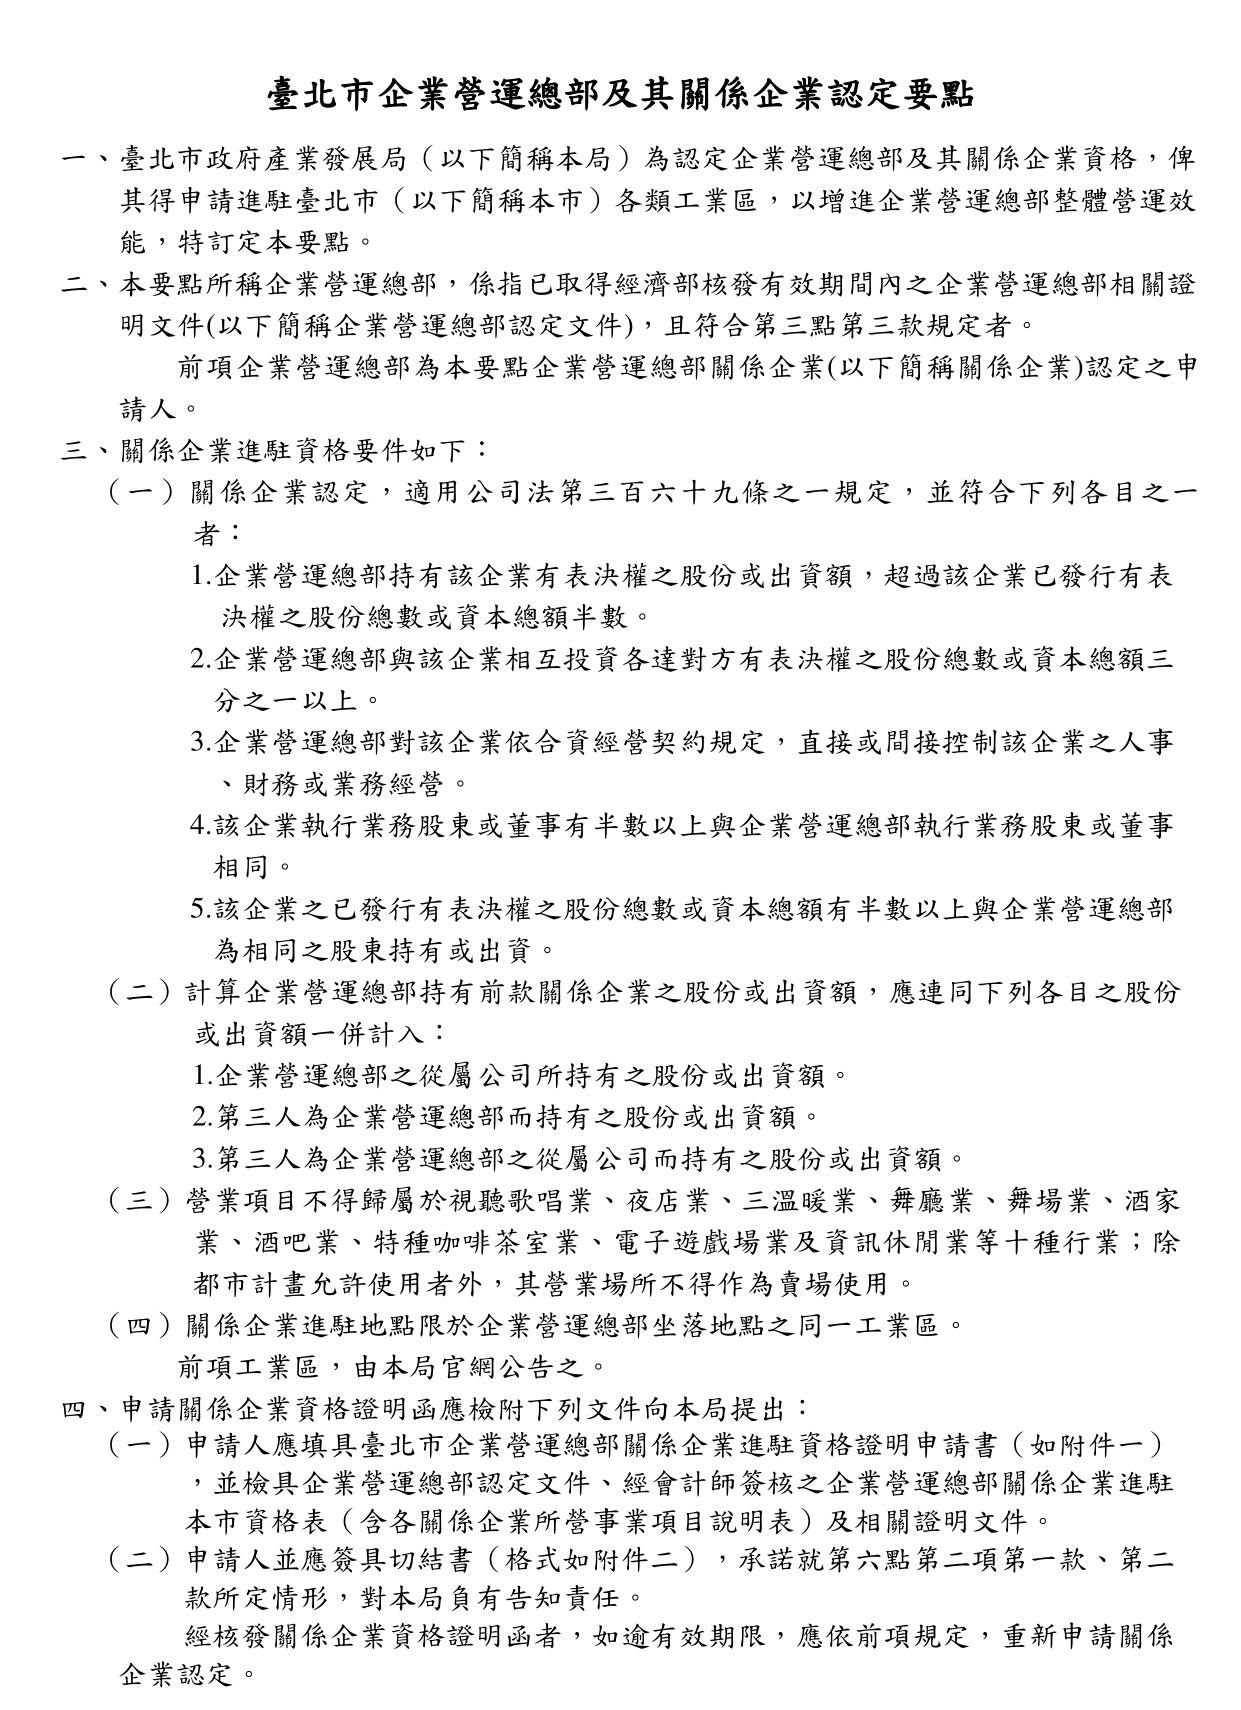 臺北市企業營運總部及其關係企業認定要點(條文)